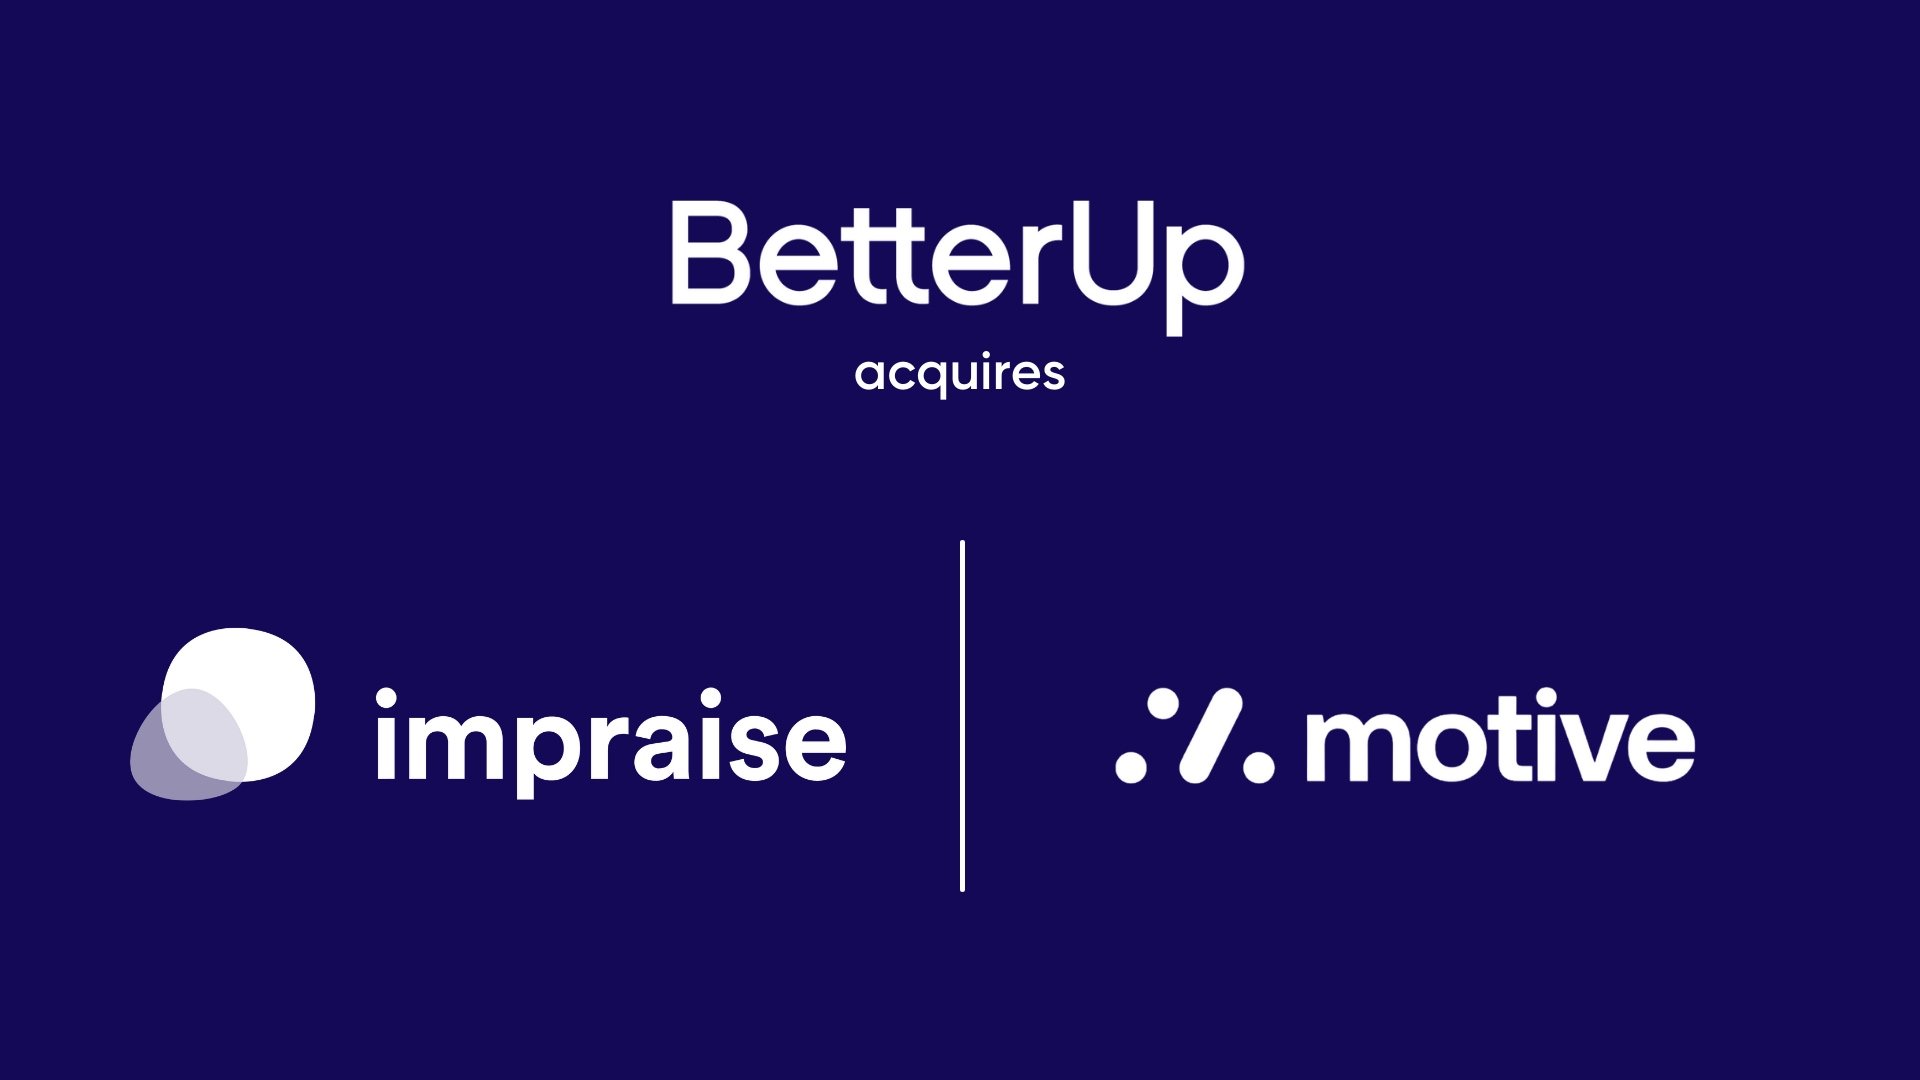 BetterUp escala el impacto humano con la adquisición de Motive e Impraise